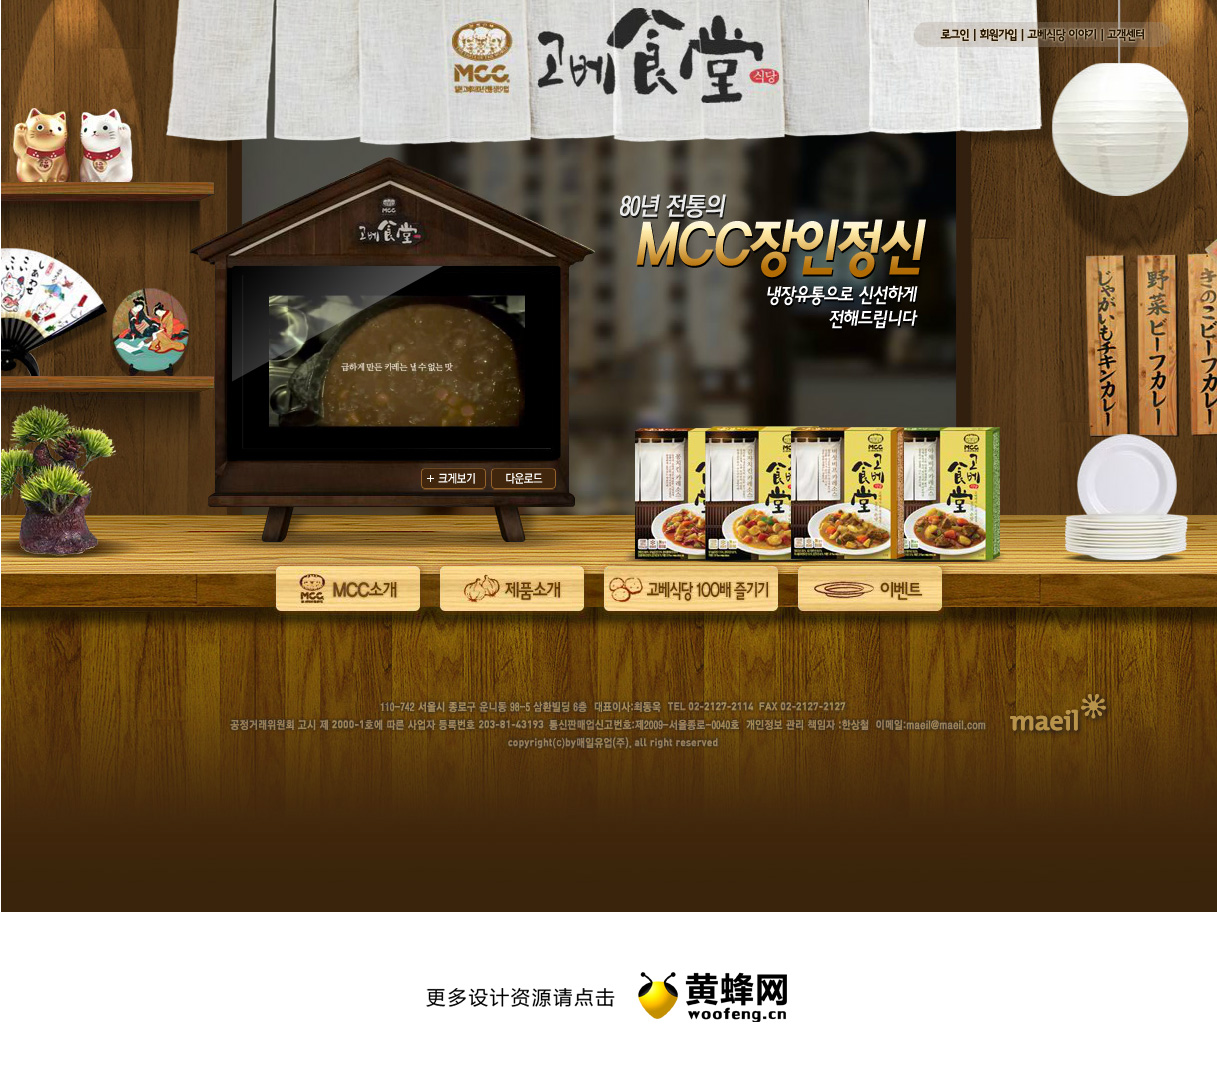 神户餐厅韩国食品网站，来源自黄蜂网https://woofeng.cn/